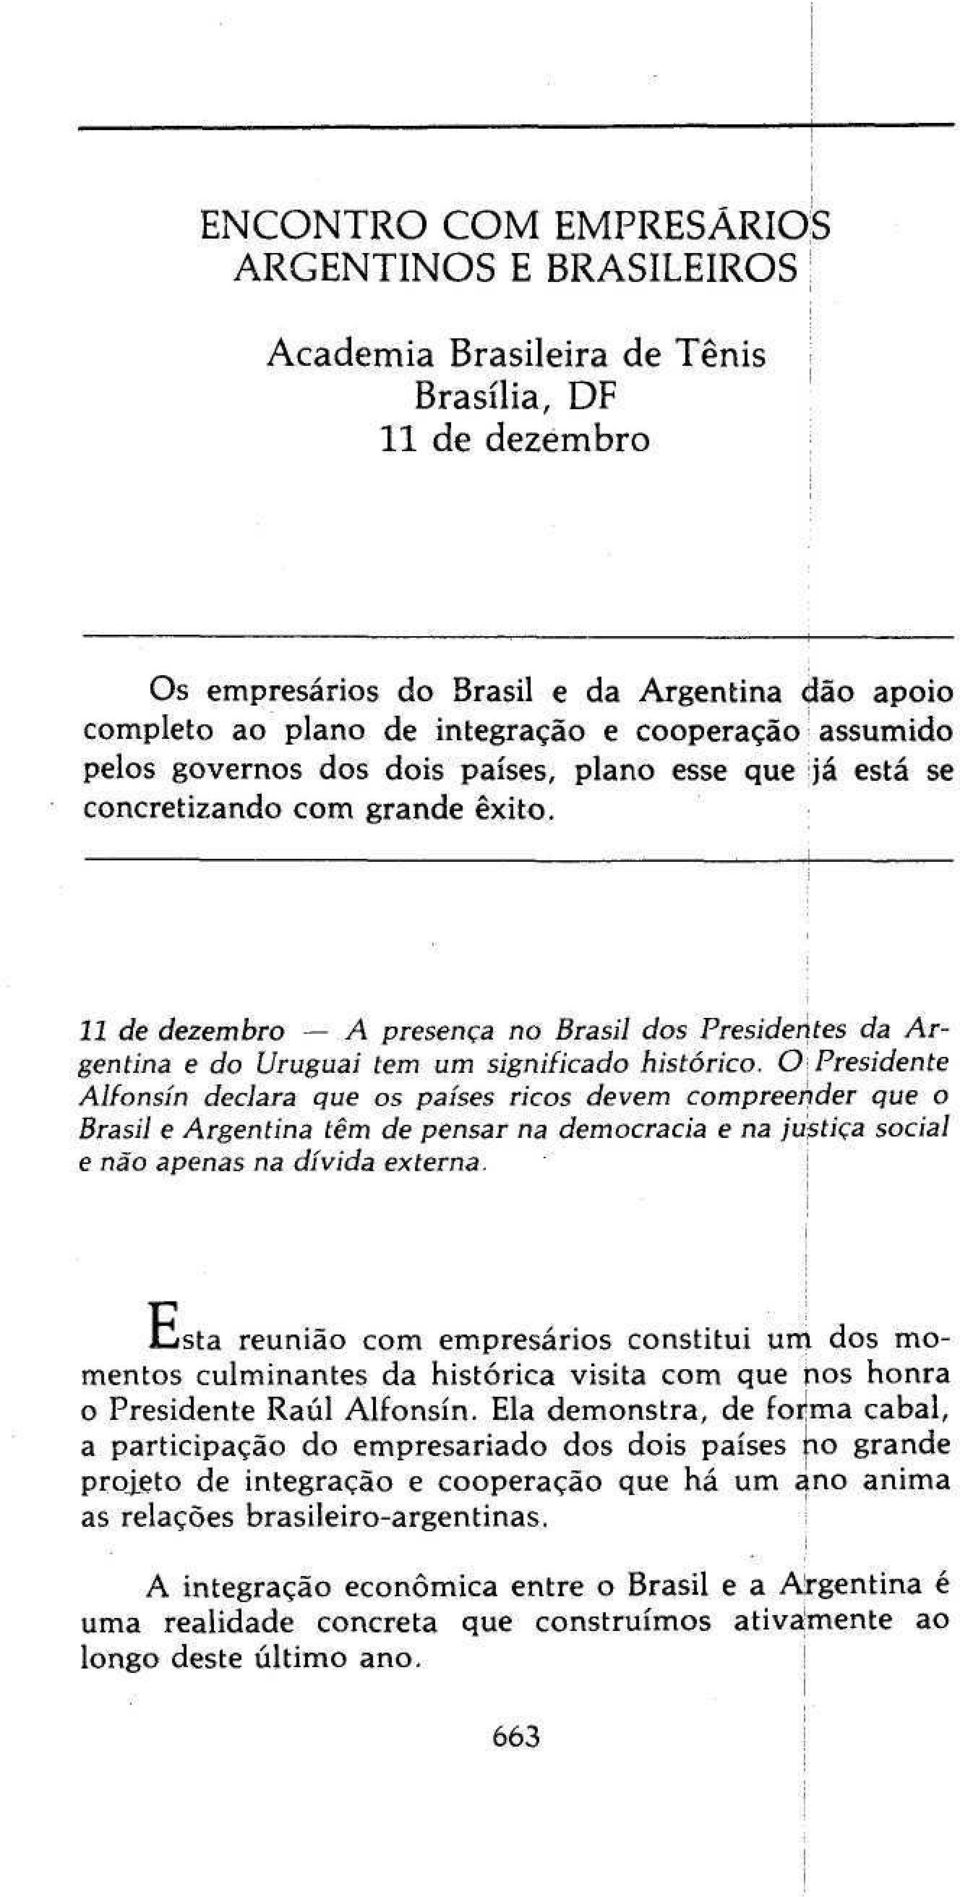 11 de dezembro A presença no Brasil dos Presidentes da Argentina e do Uruguai tem um significado histórico.